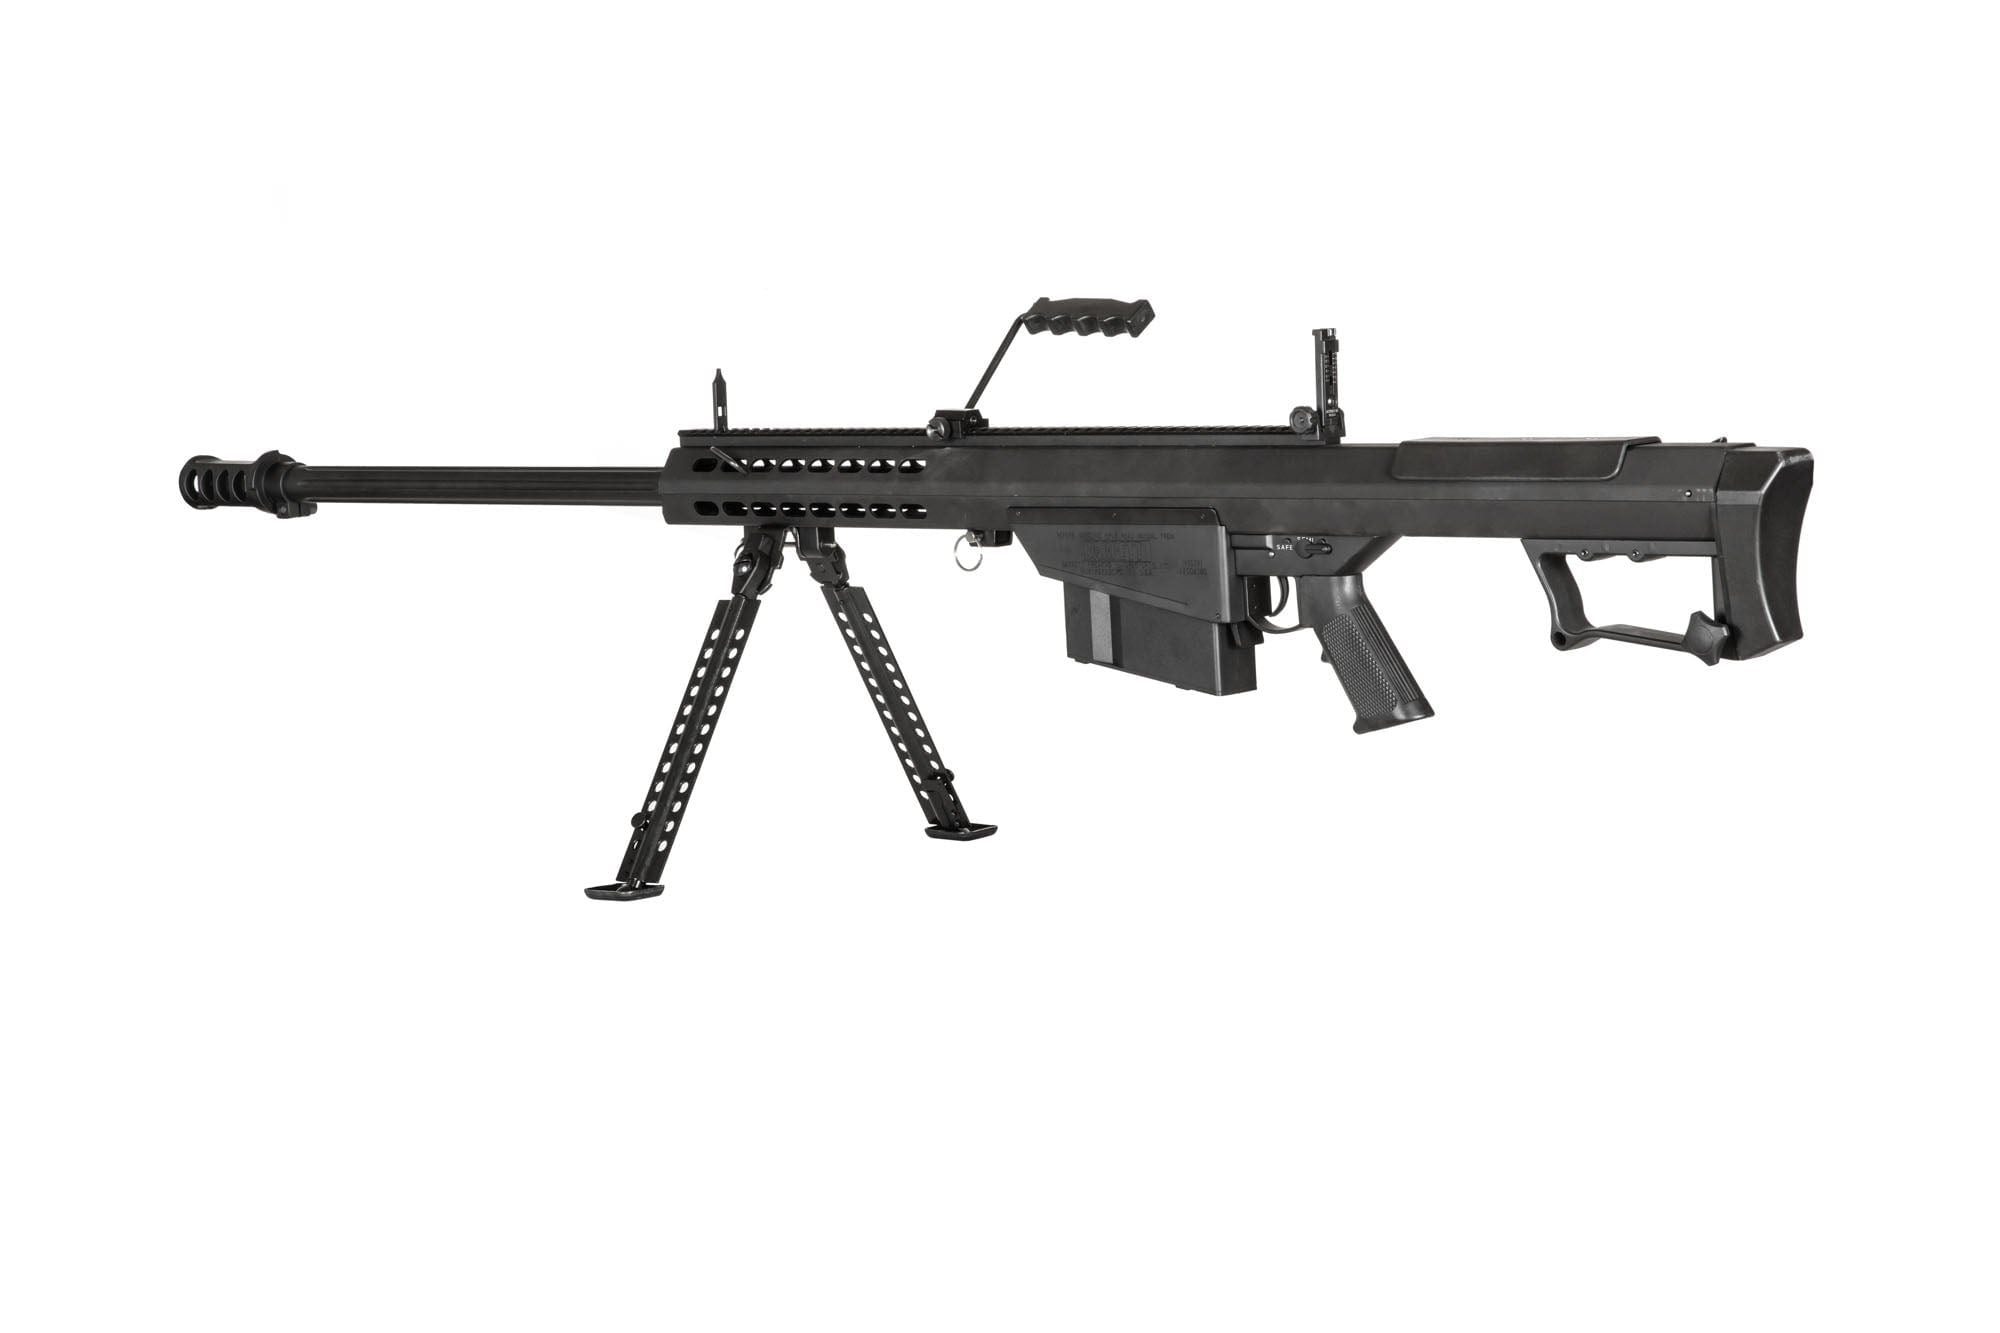 SW-024S Barrett M82 sniper rifle with bipod - black